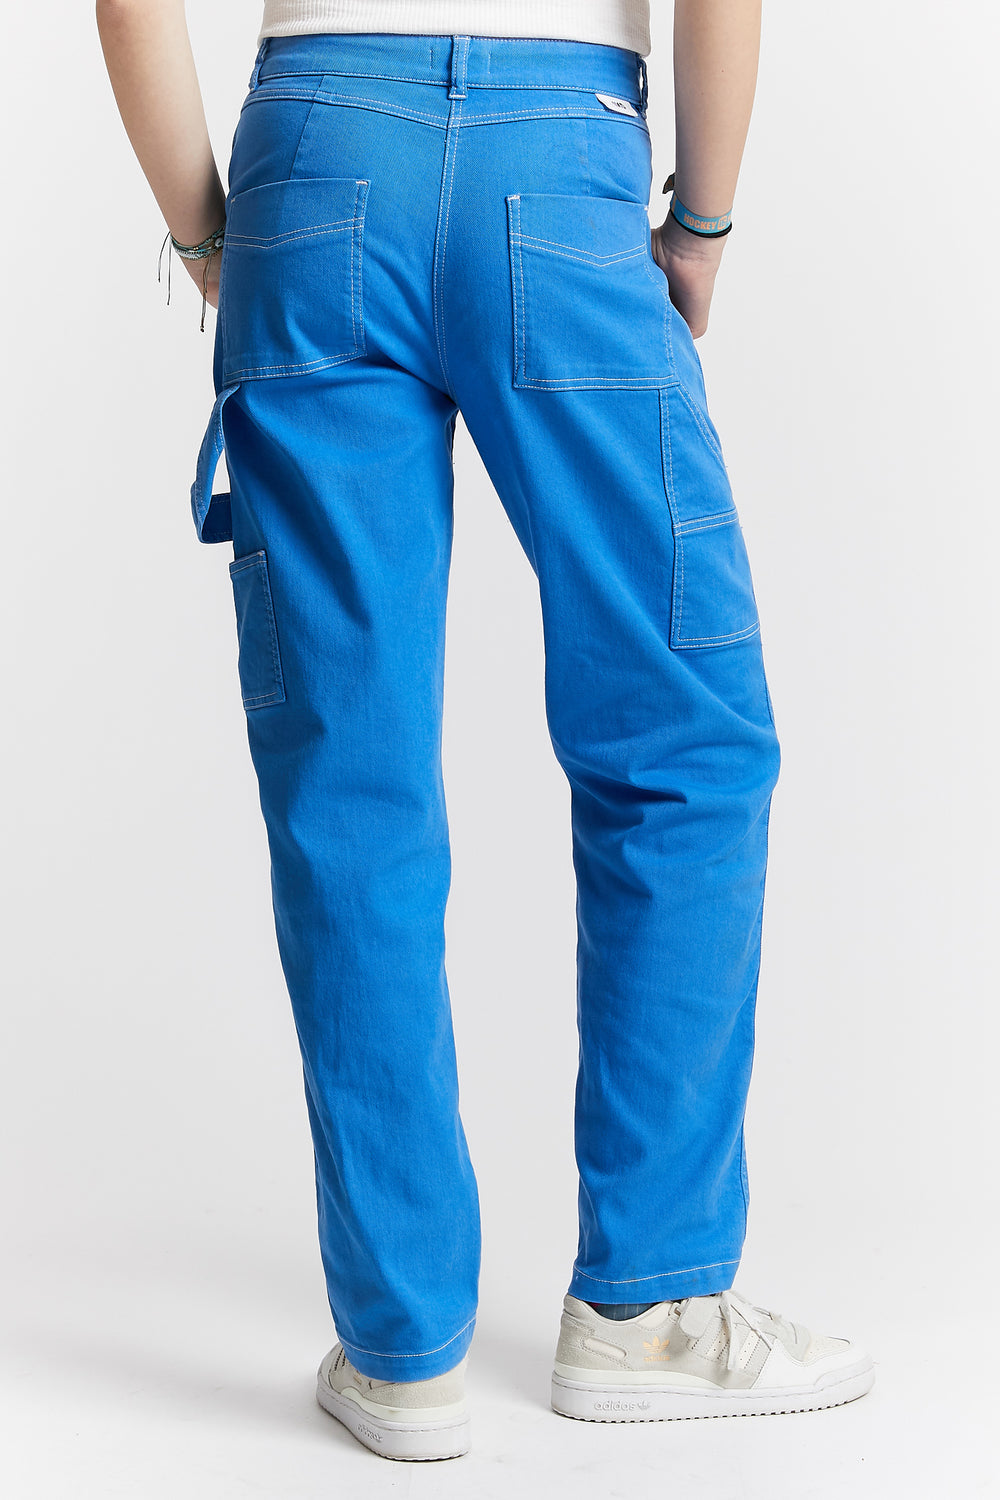 Pro Cargo Trousers - RG291 - PCL Corporatewear Ltd